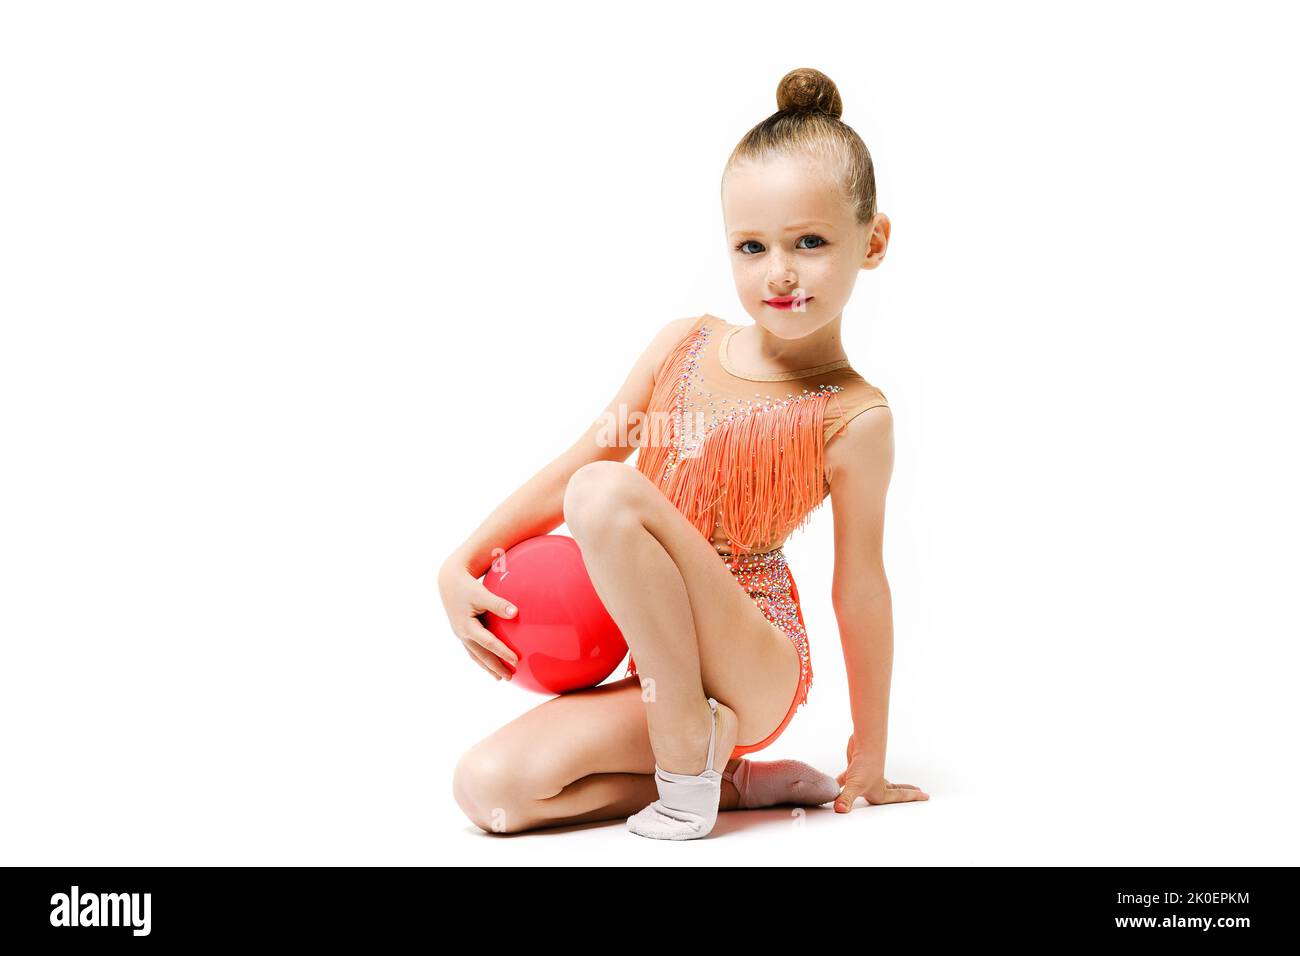 Piccola ragazza ginnastica studio ritratto con palla di gomma, acrobazie artistiche e sport professionale per i bambini. La ragazza si siede su un ginocchio. Foto Stock